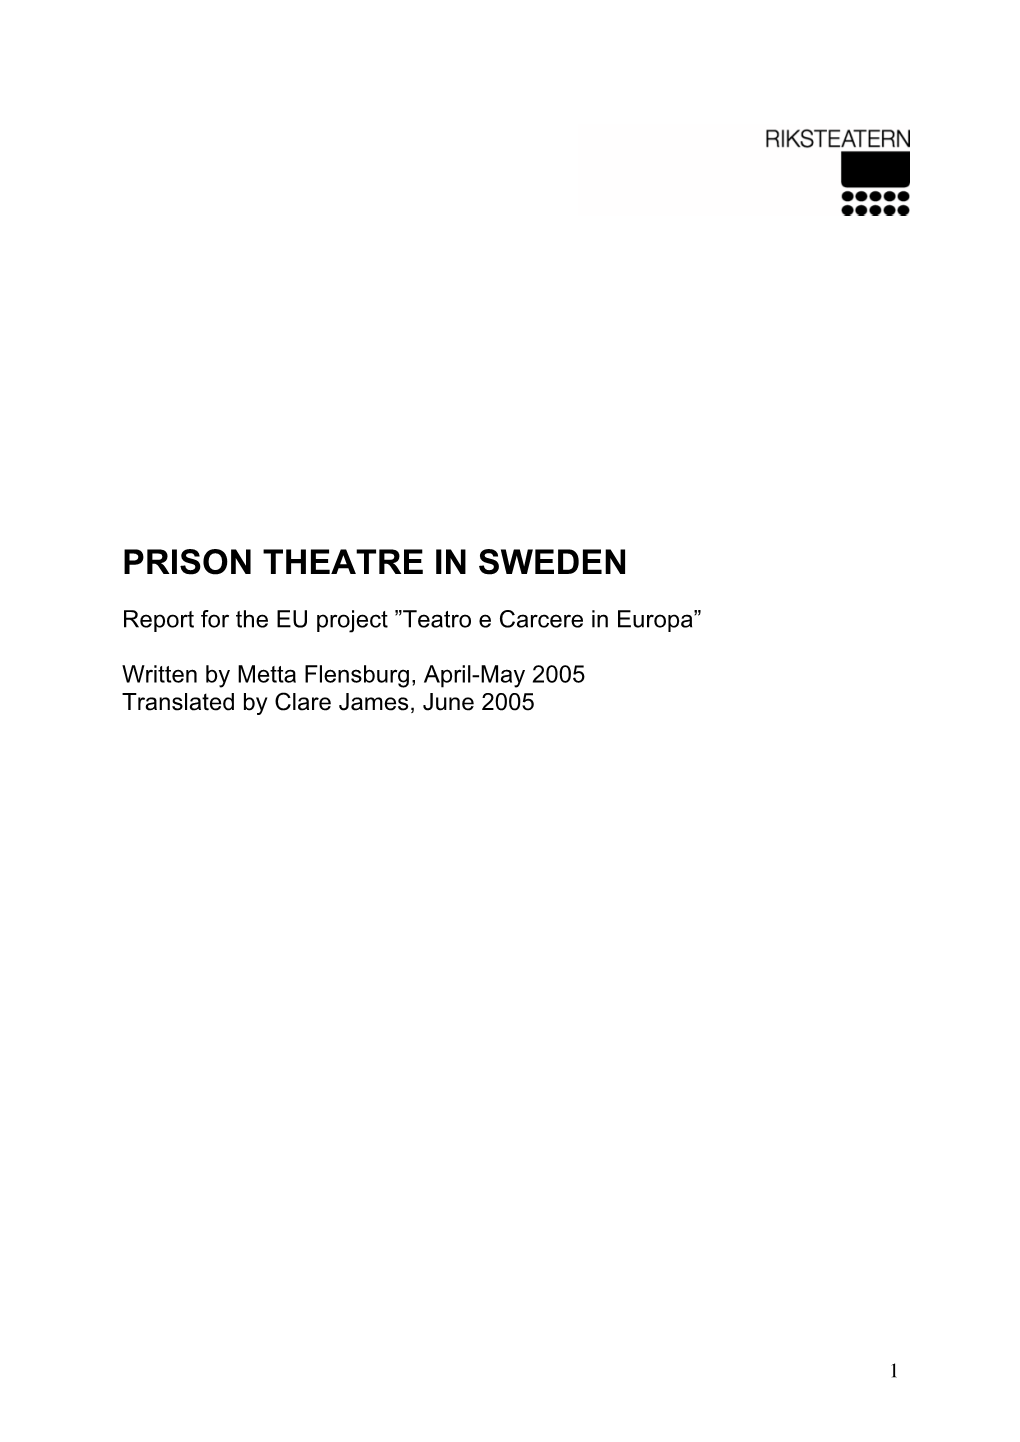 Prison Theatre in Sweden